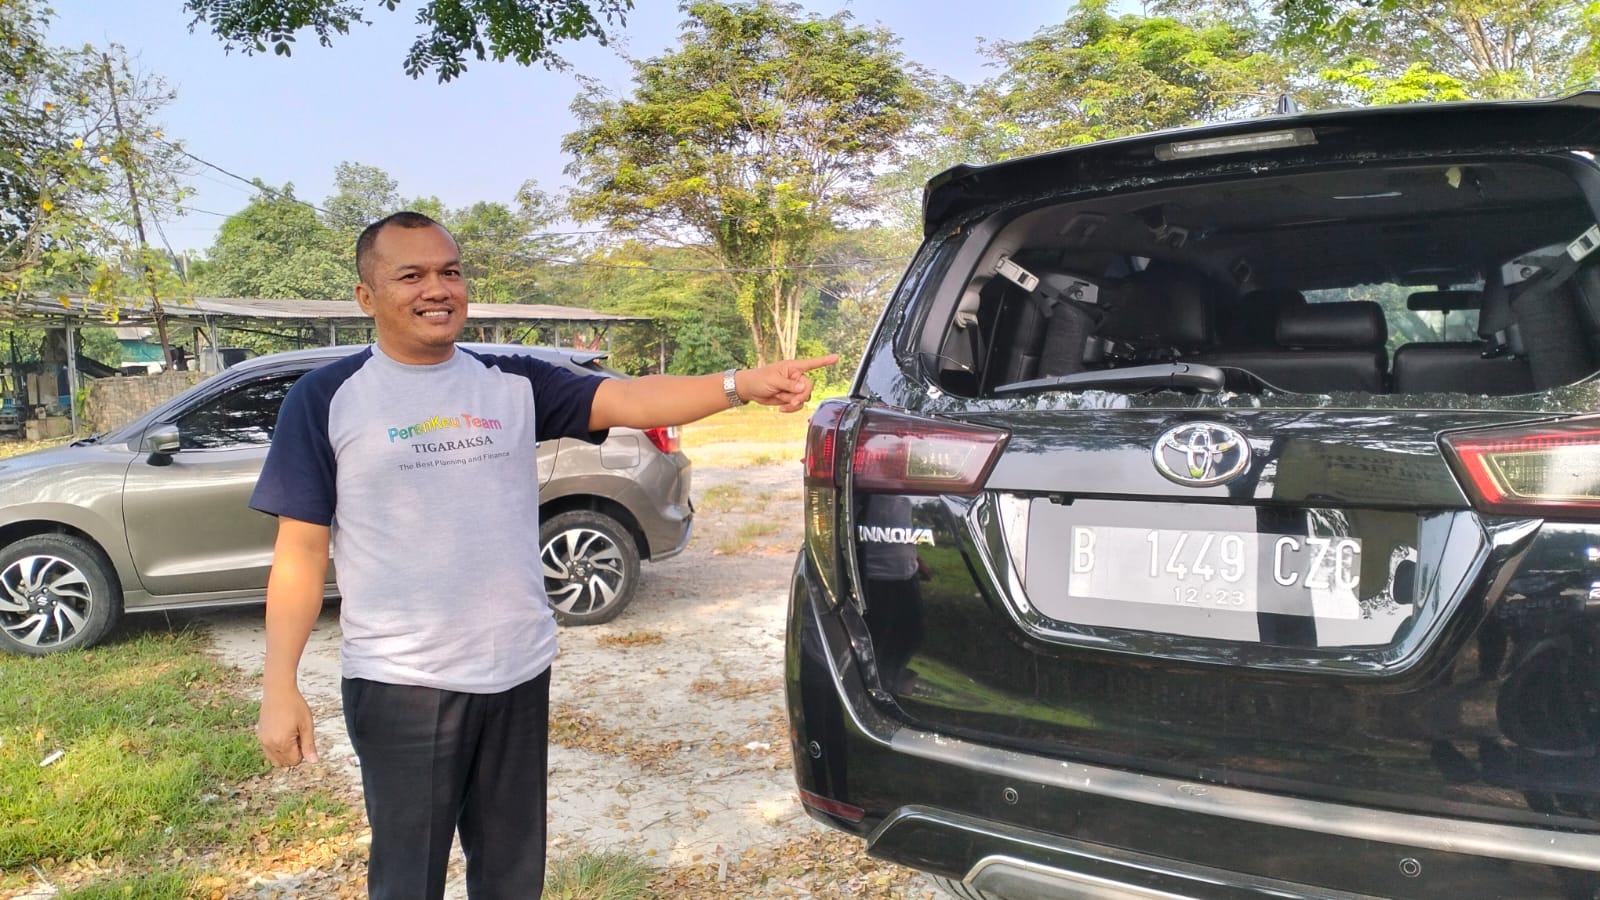 ODGJ Ngamuk Pecahkan Kaca Mobil Warga di Tigaraksa Tangerang